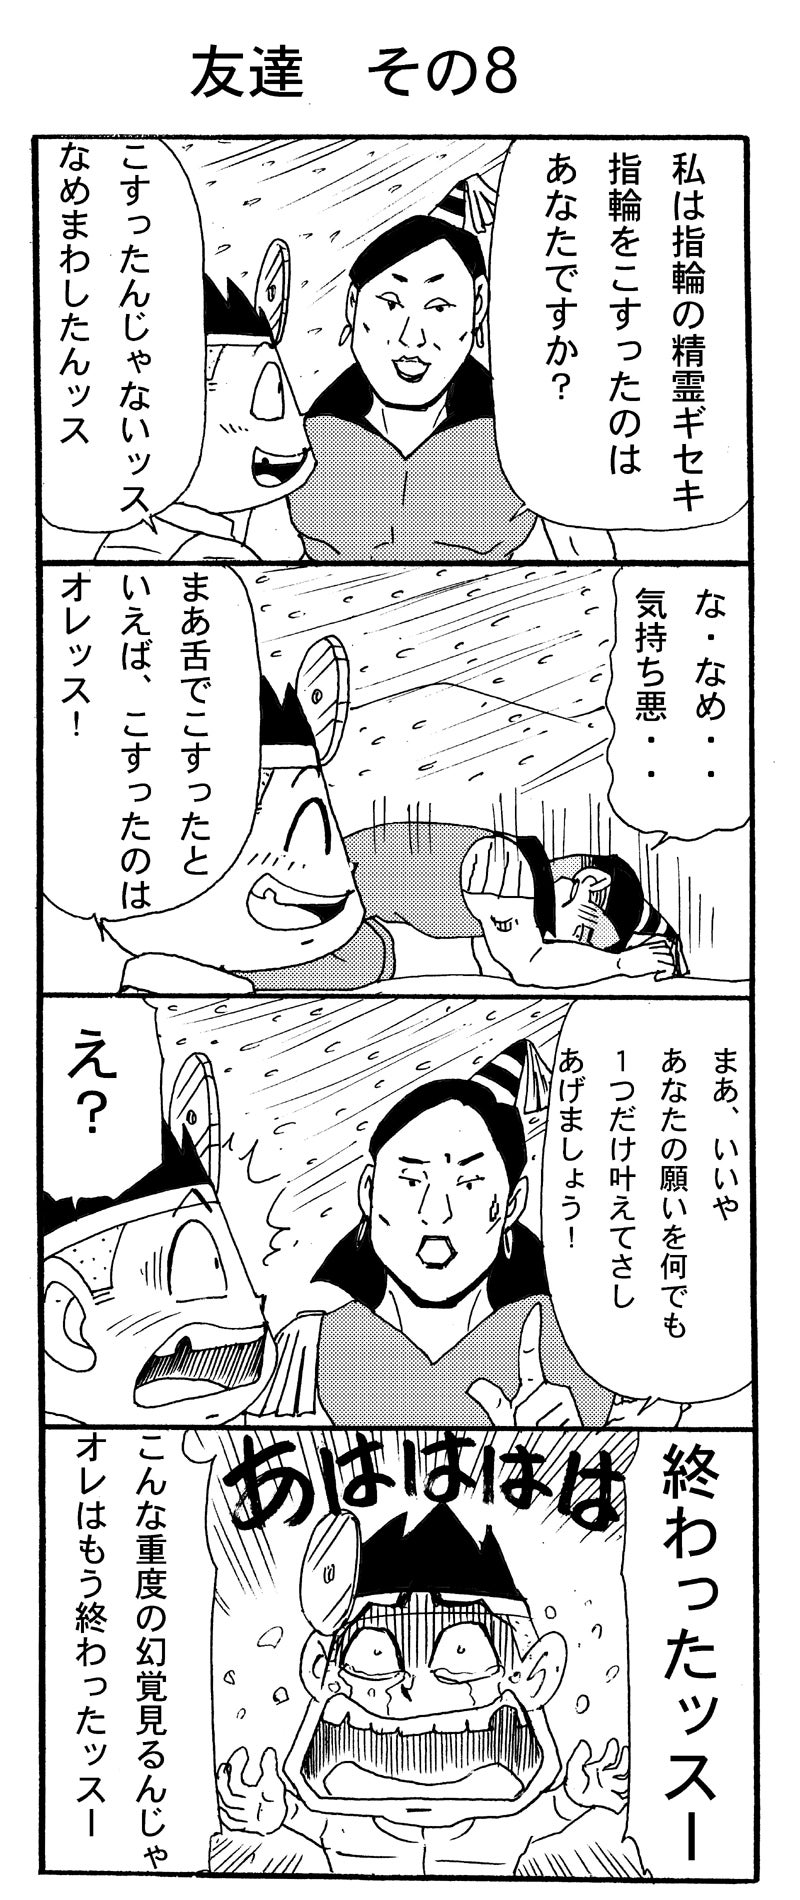 電撃ドクターモアイくん2 第8話 漫画家 岩村俊哉 オフィシャルブログ イワムランド